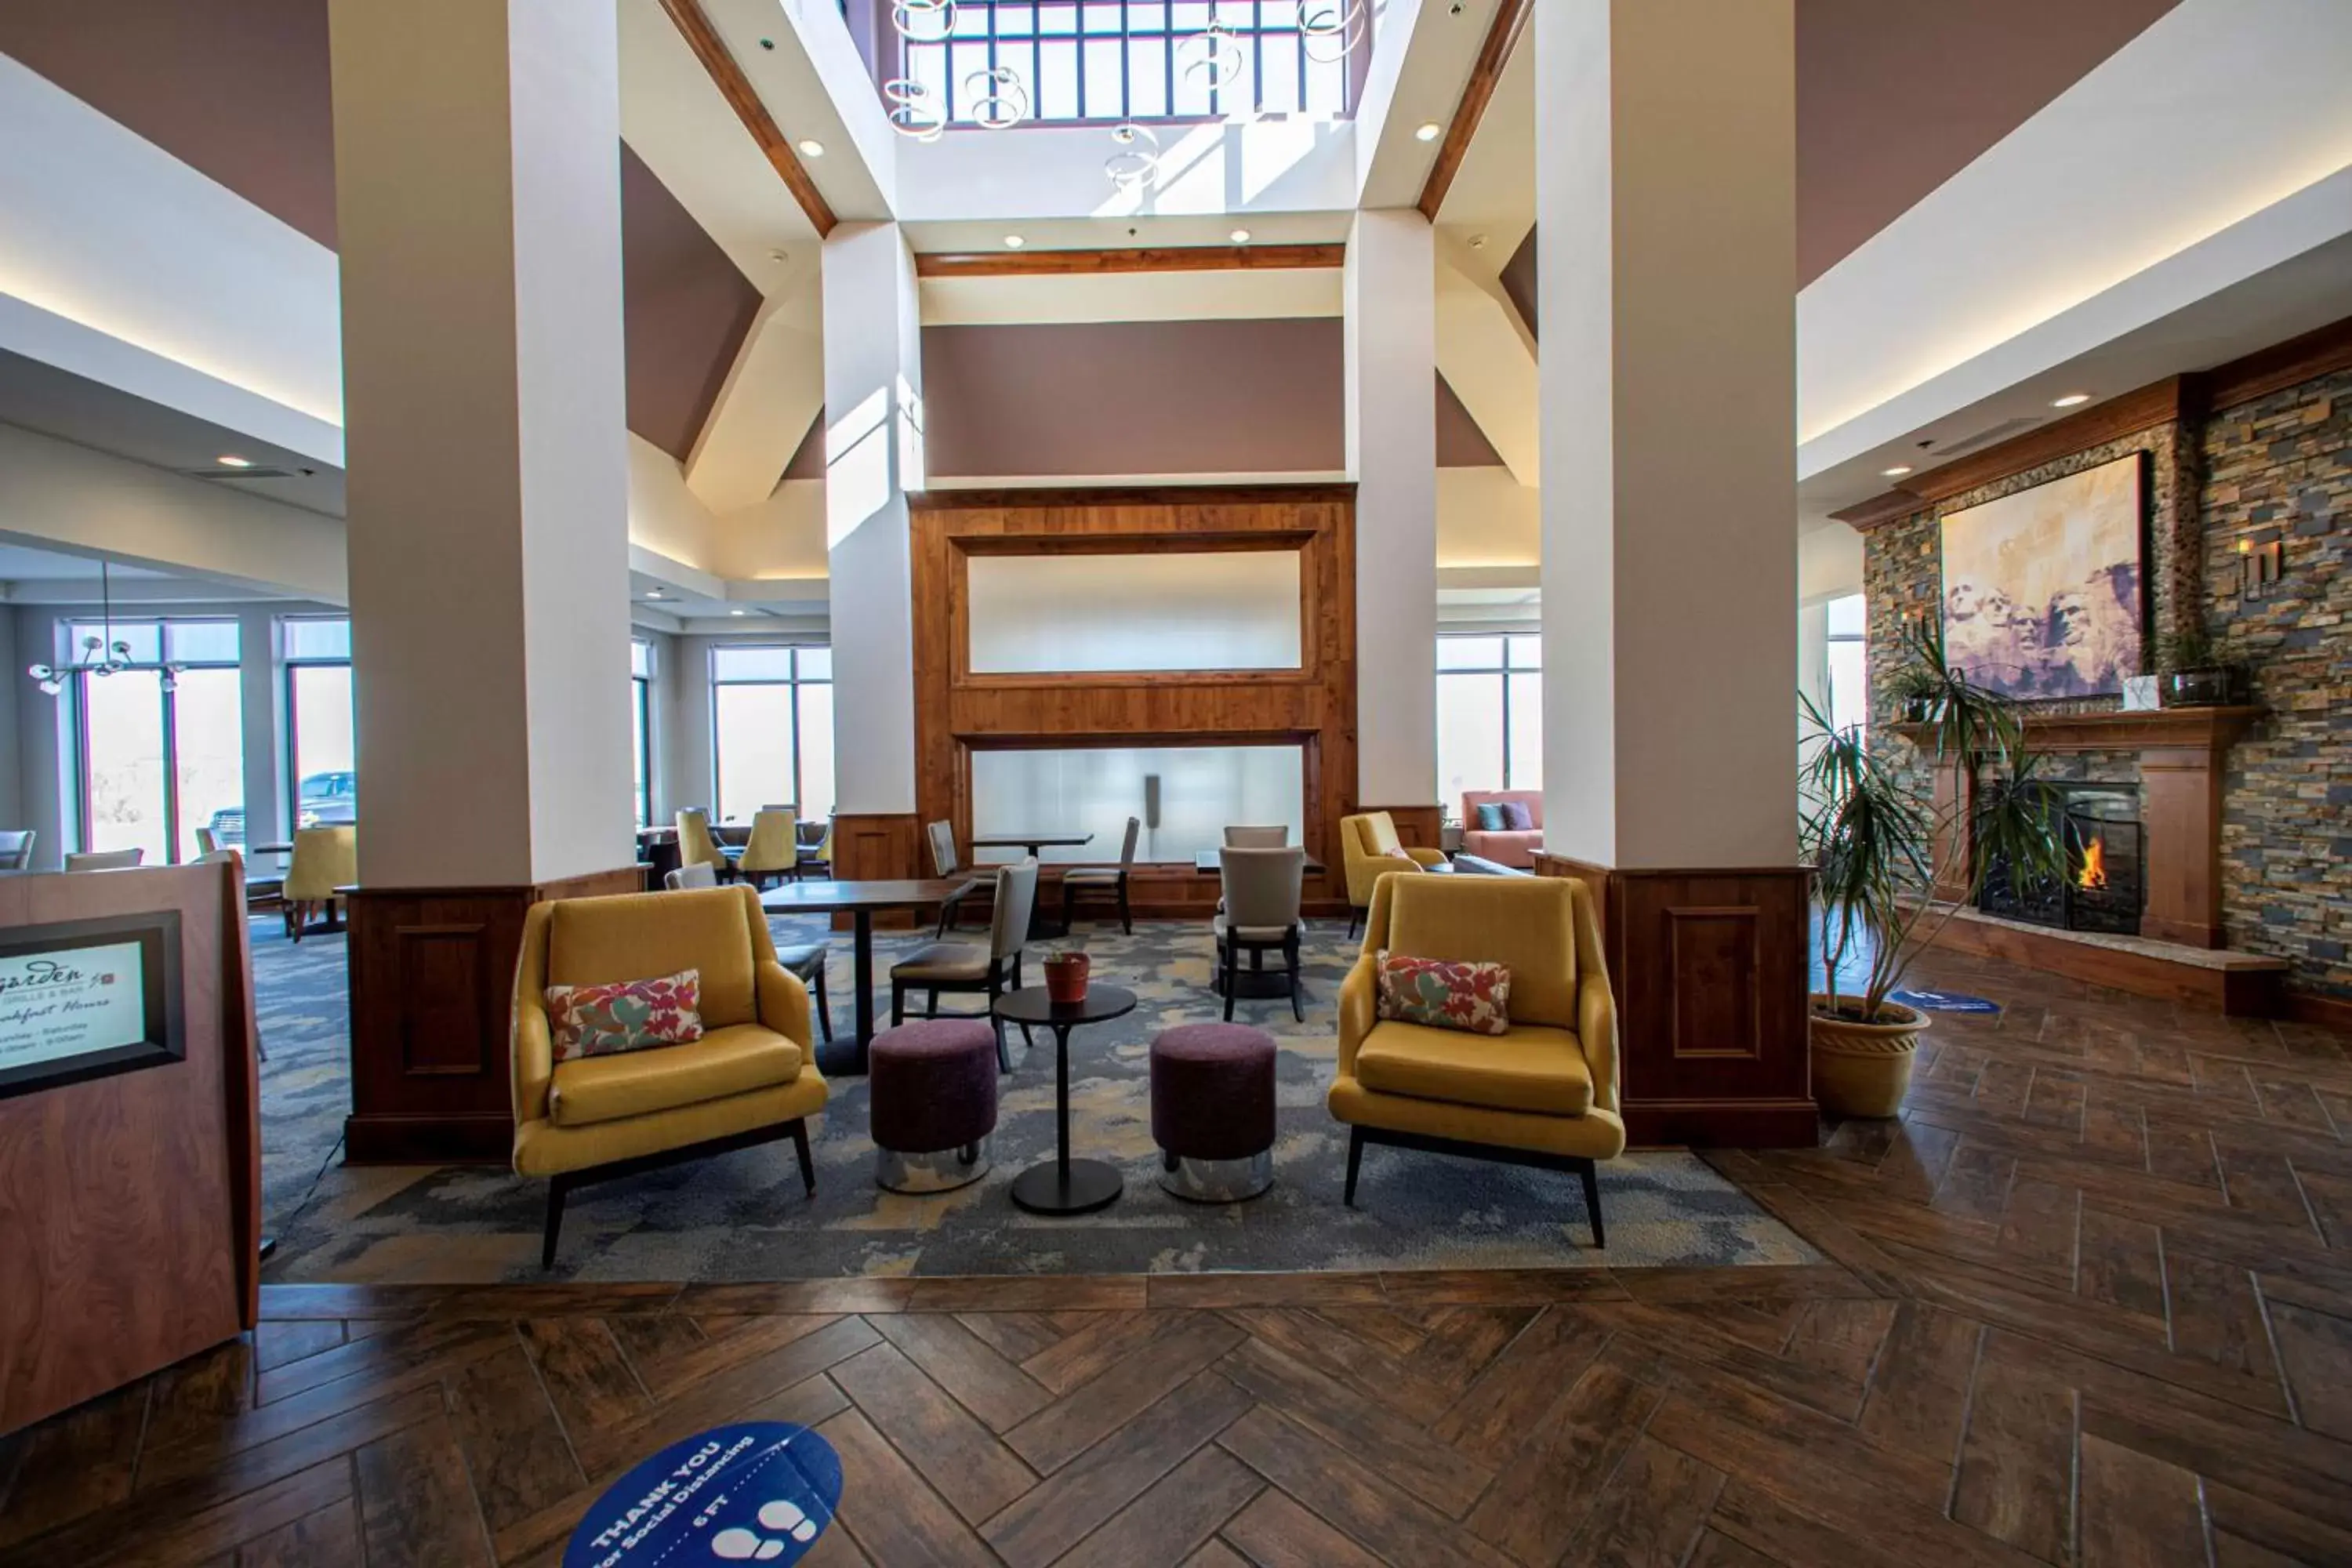 Lobby or reception, Lobby/Reception in Hilton Garden Inn Rapid City